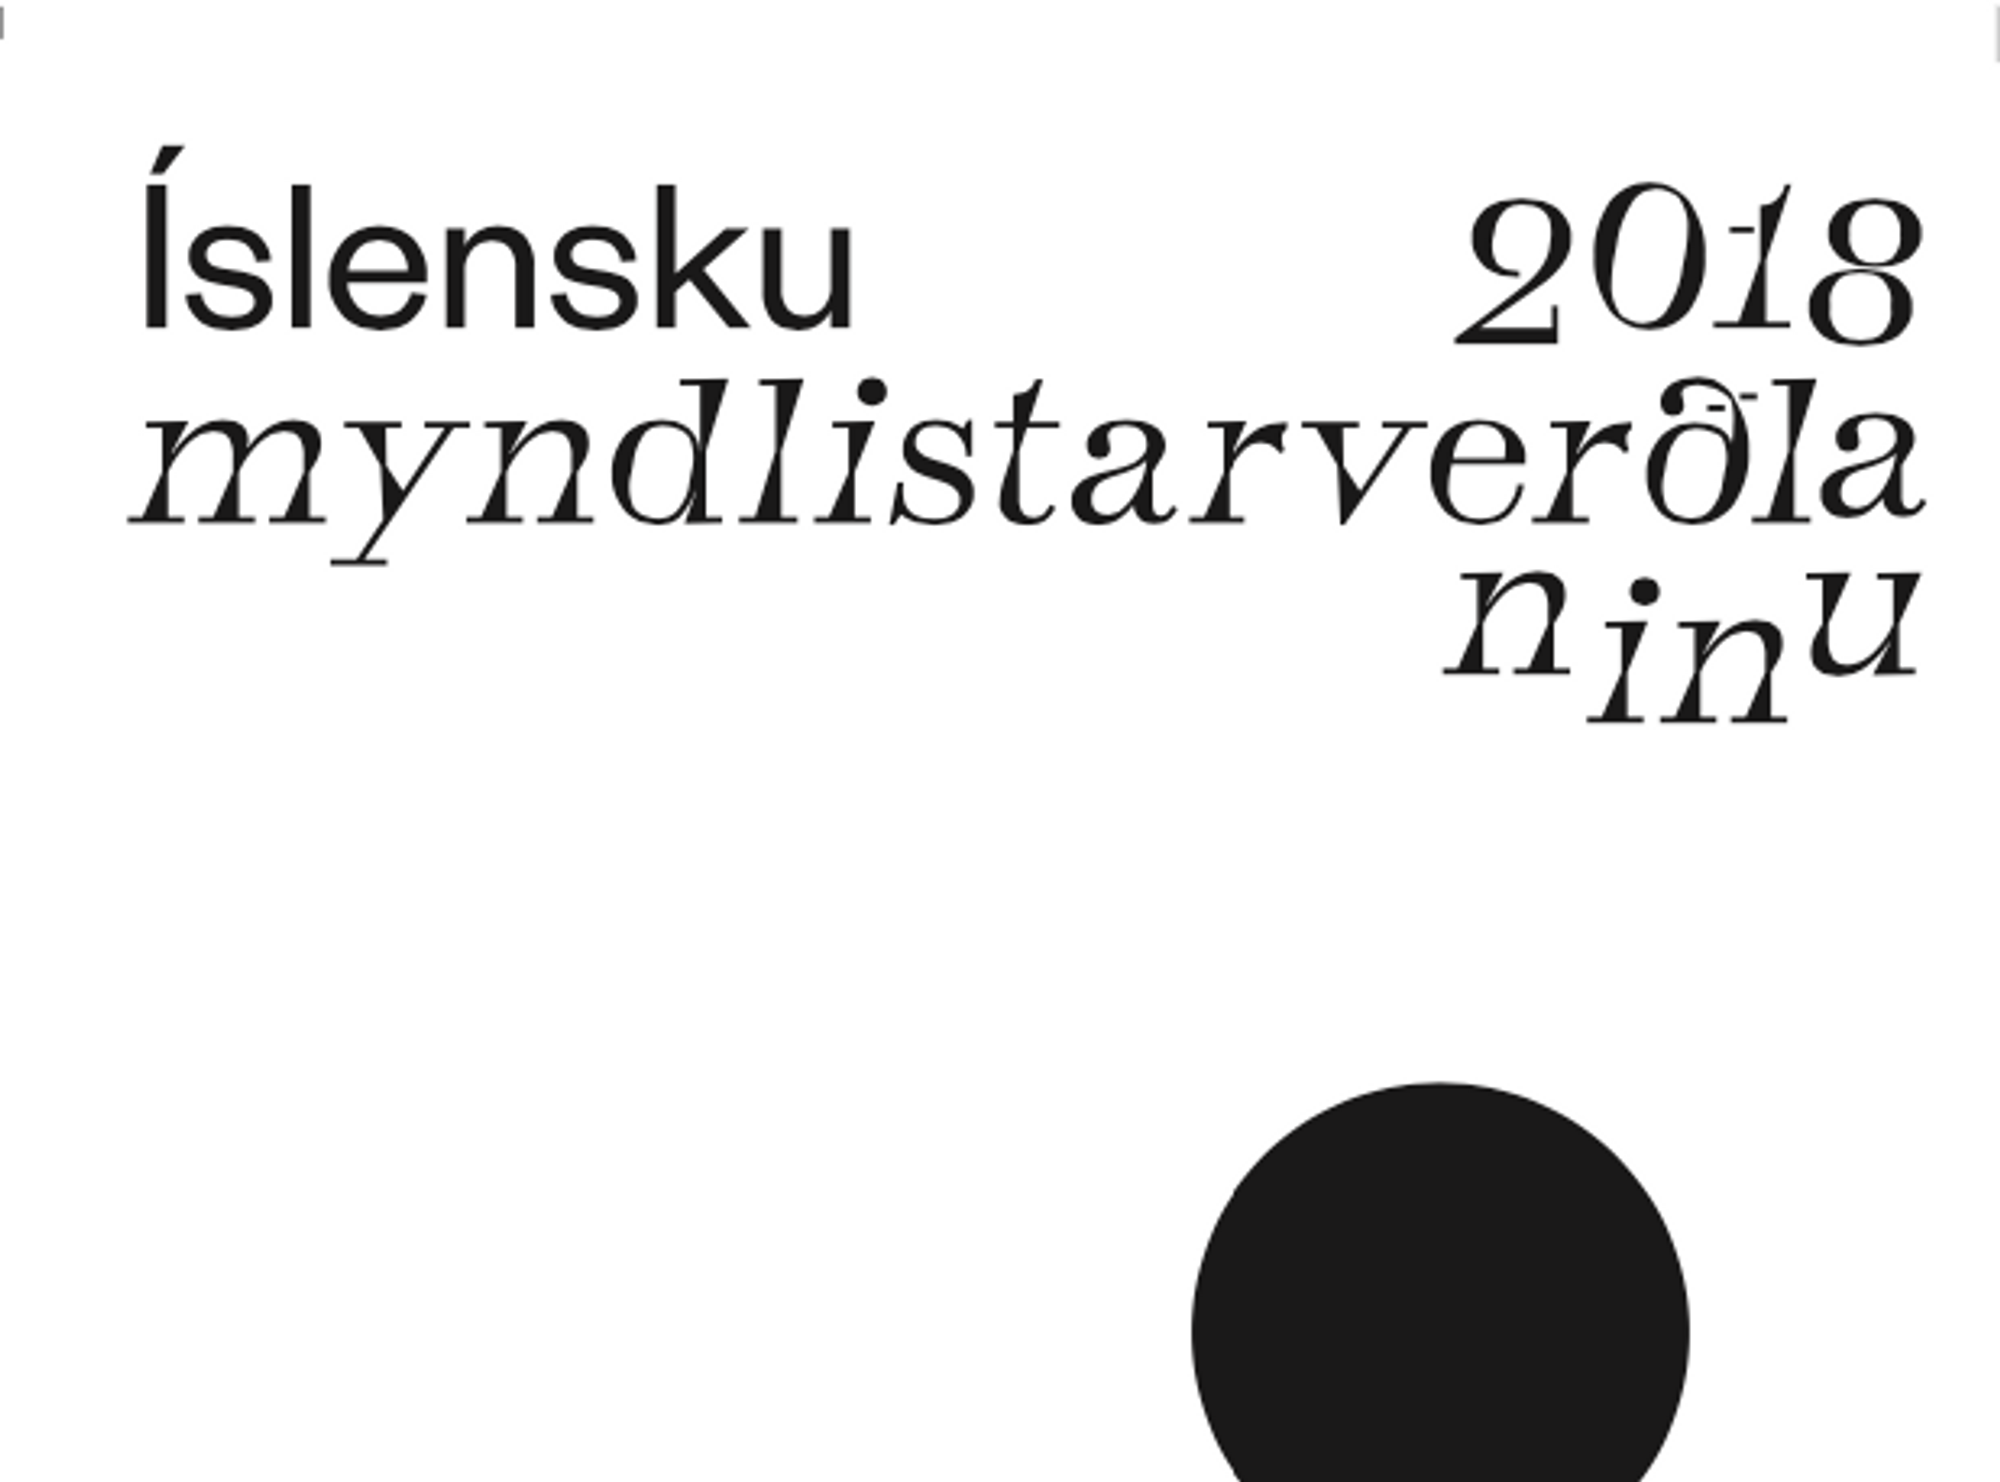 Íslensku myndlistarverðlaunin 2018